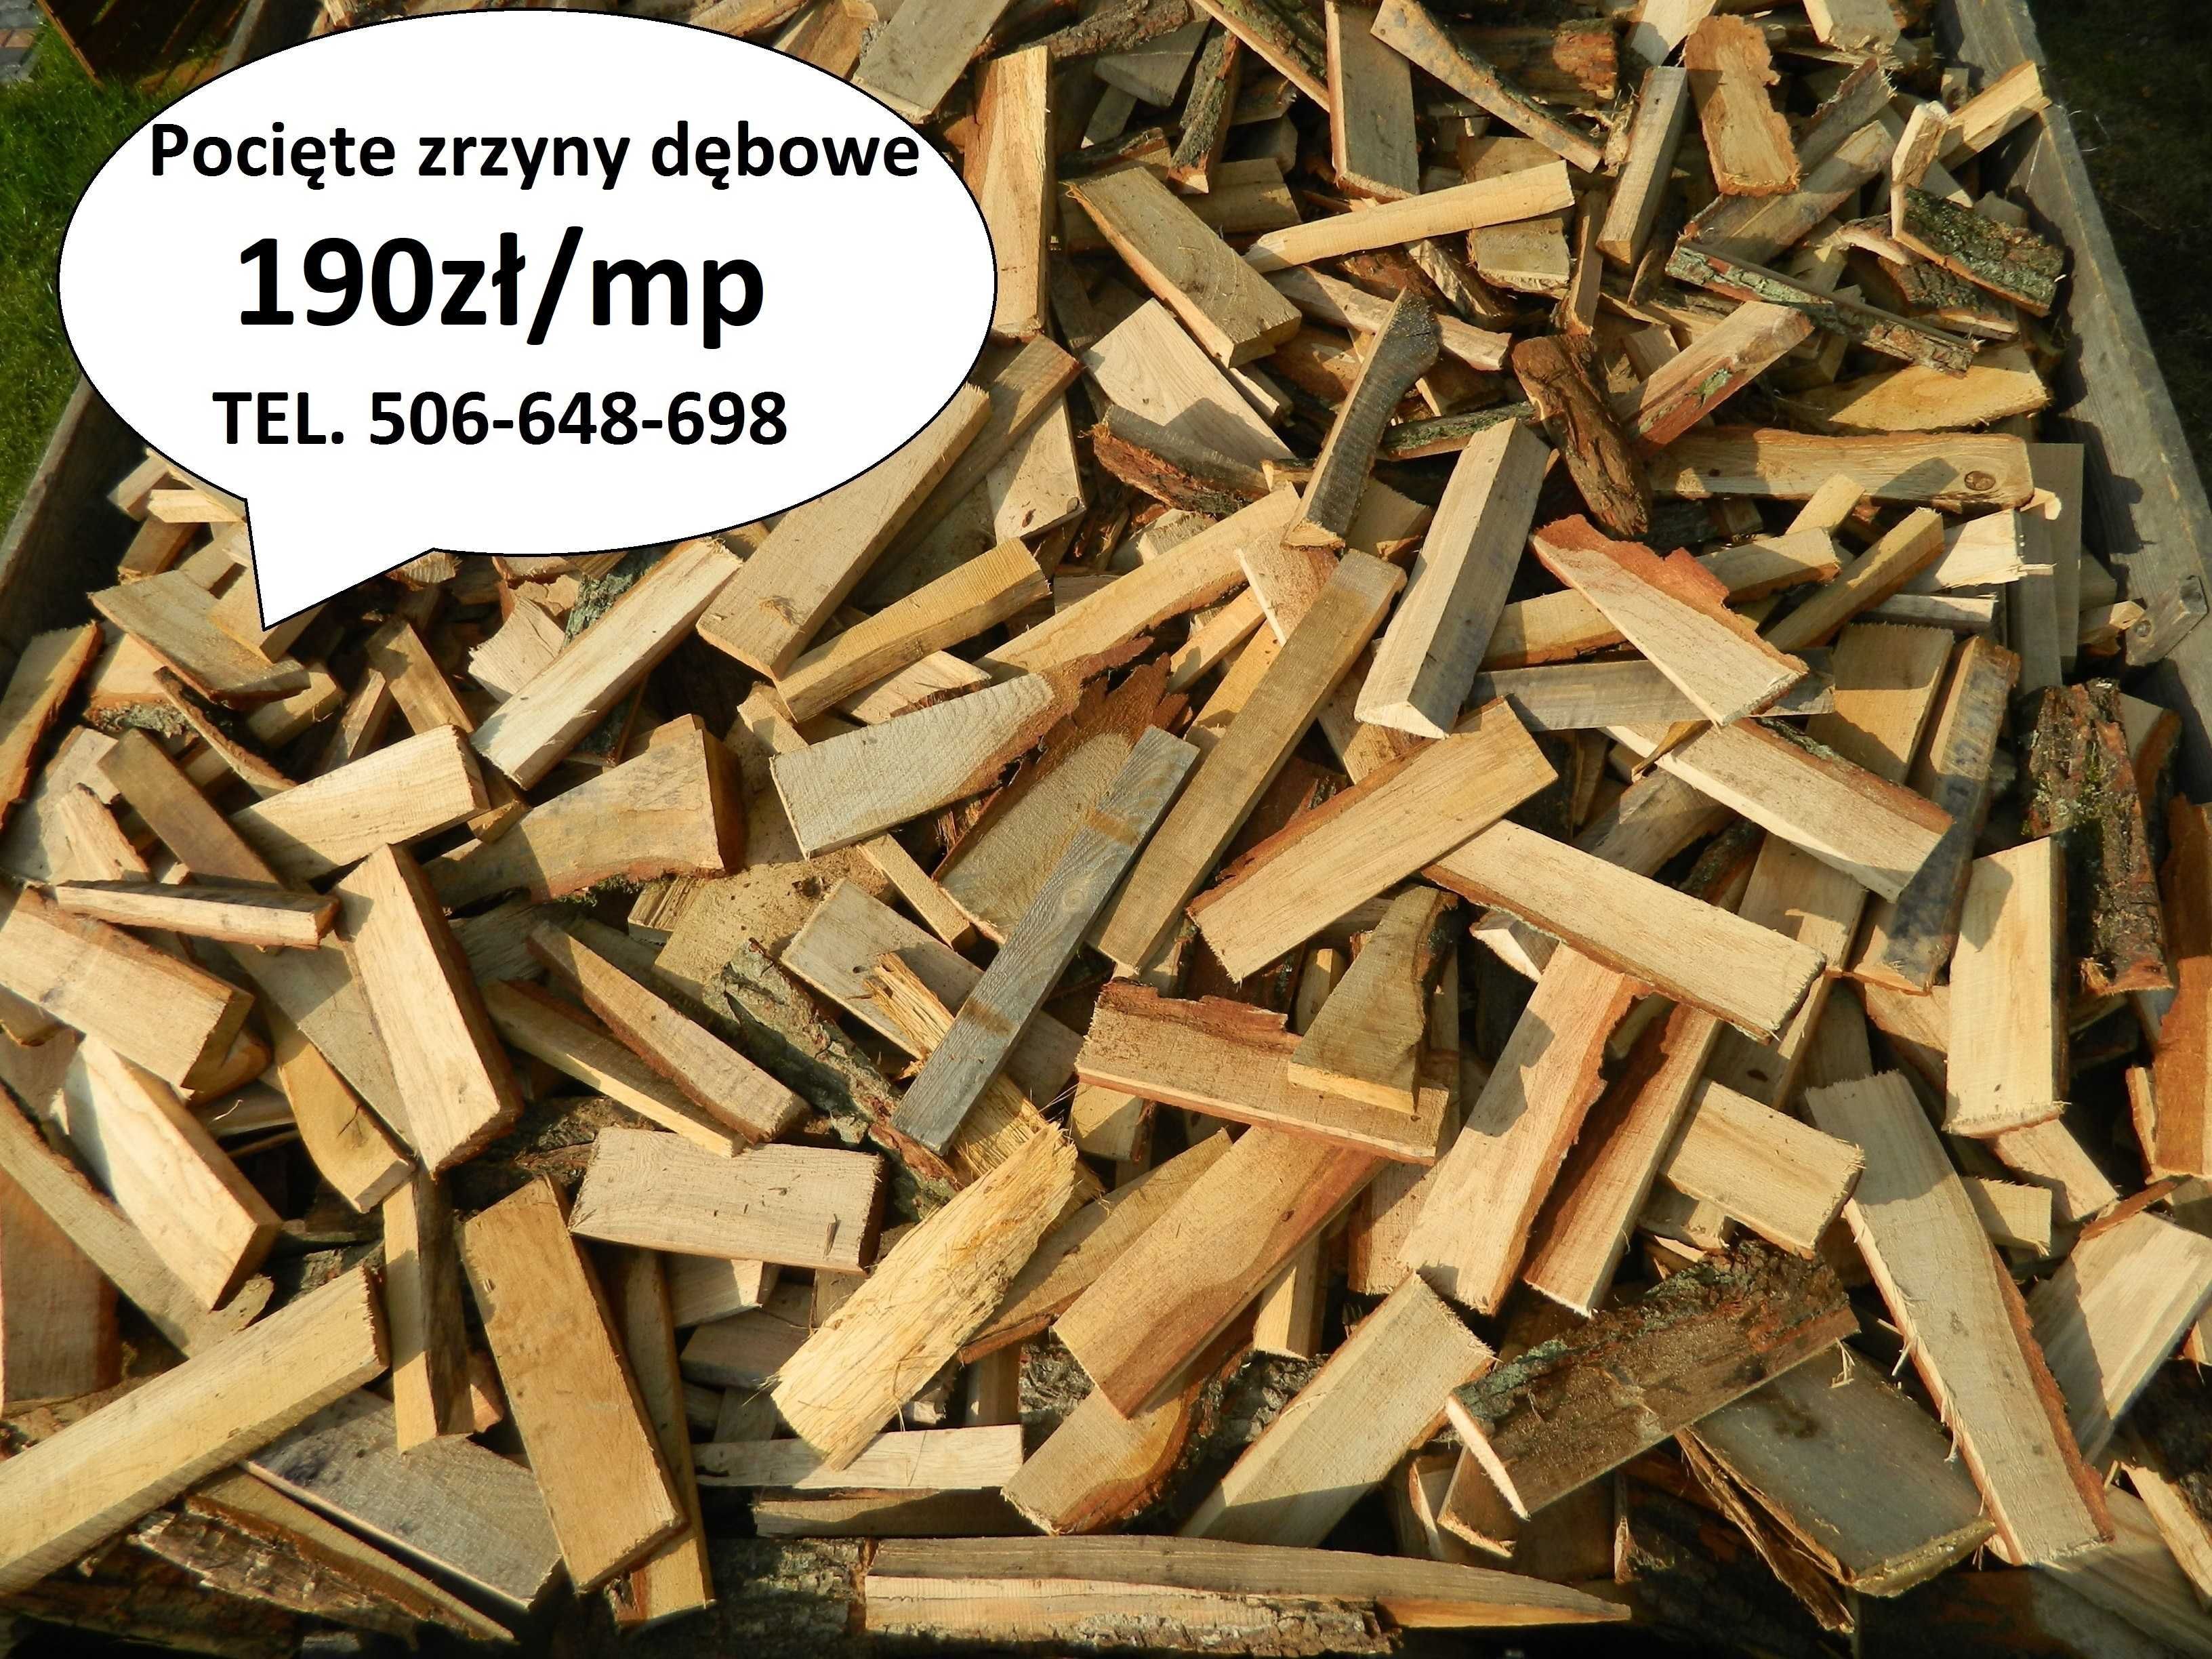 Opał - pocięta zrzyna dębowa drewno rozpałka węgiel pellet brykiet